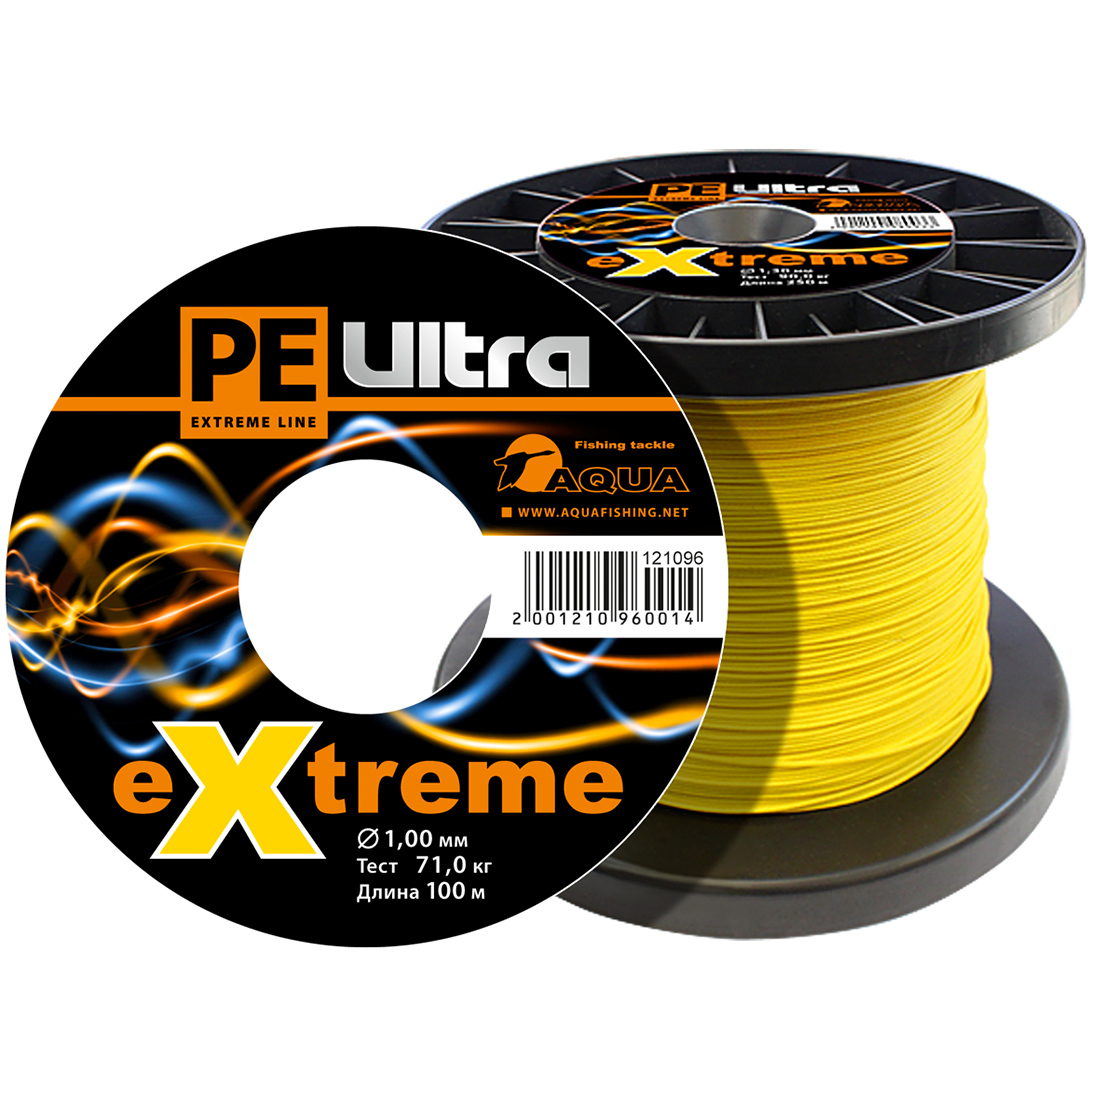 Плетеный Шнур Для Рыбалки Aqua Pe Ultra Extreme 1,00mm (Цвет Желтый) 100m